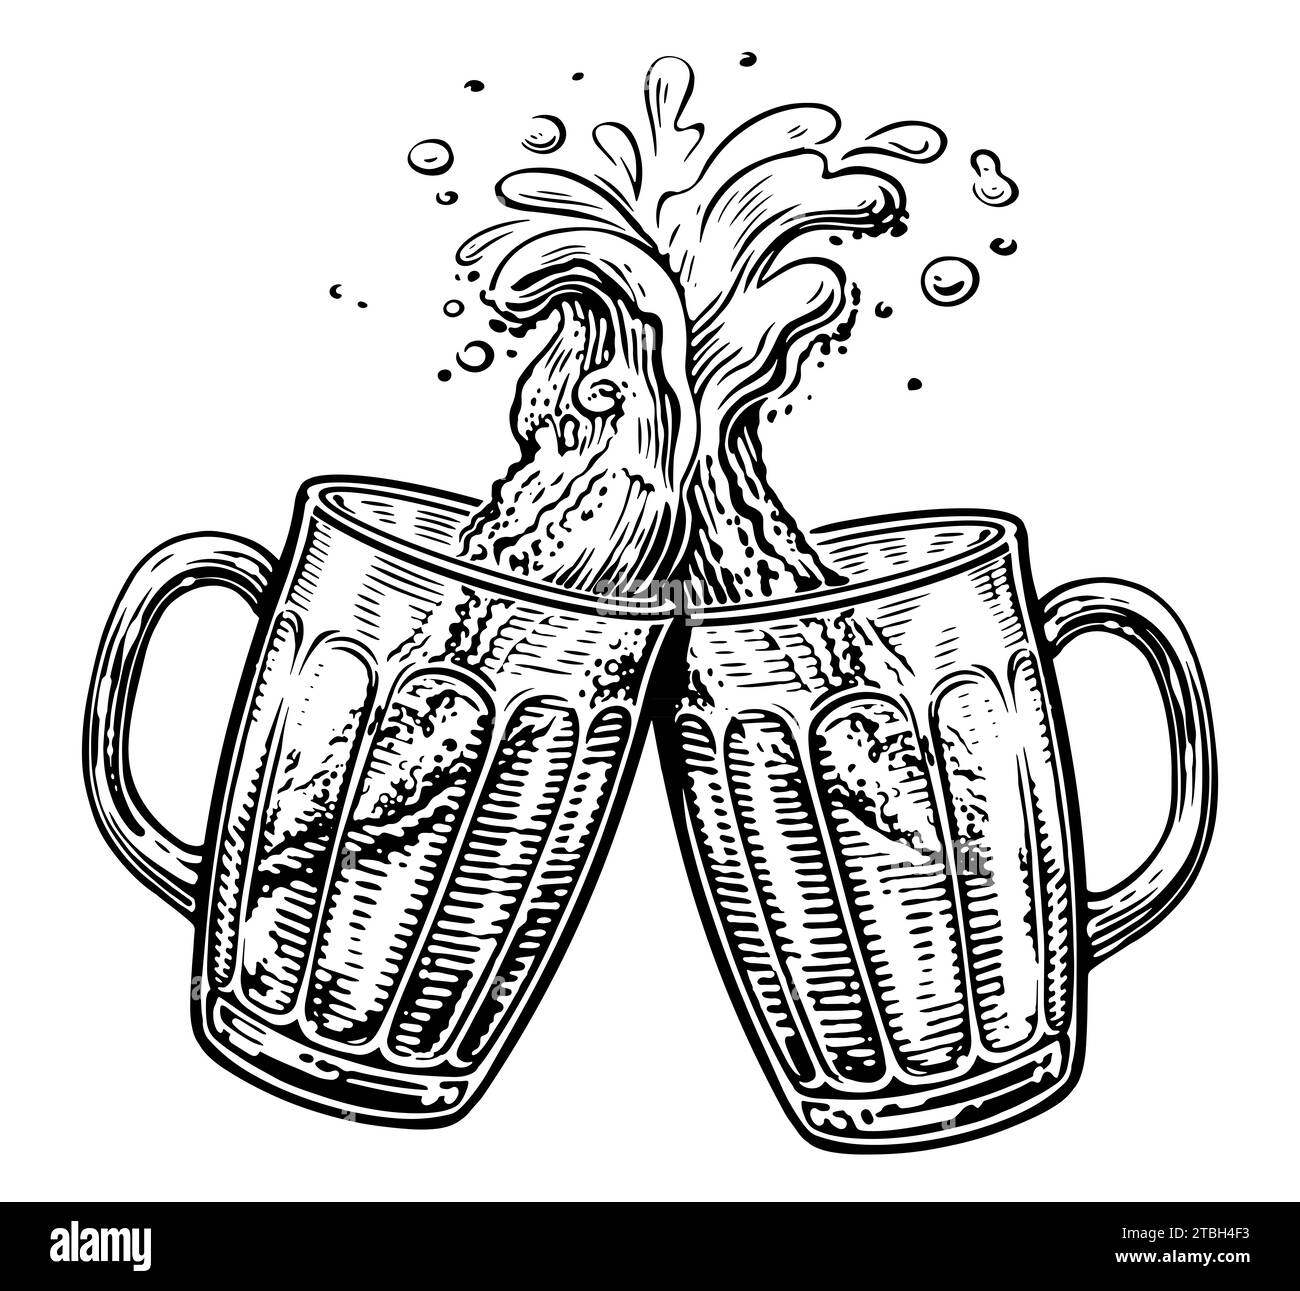 Zwei Bierbecher zum Toasten, Cheers. Klirrende Glasbehälter voller Bier und Schaumspritzer Stockfoto